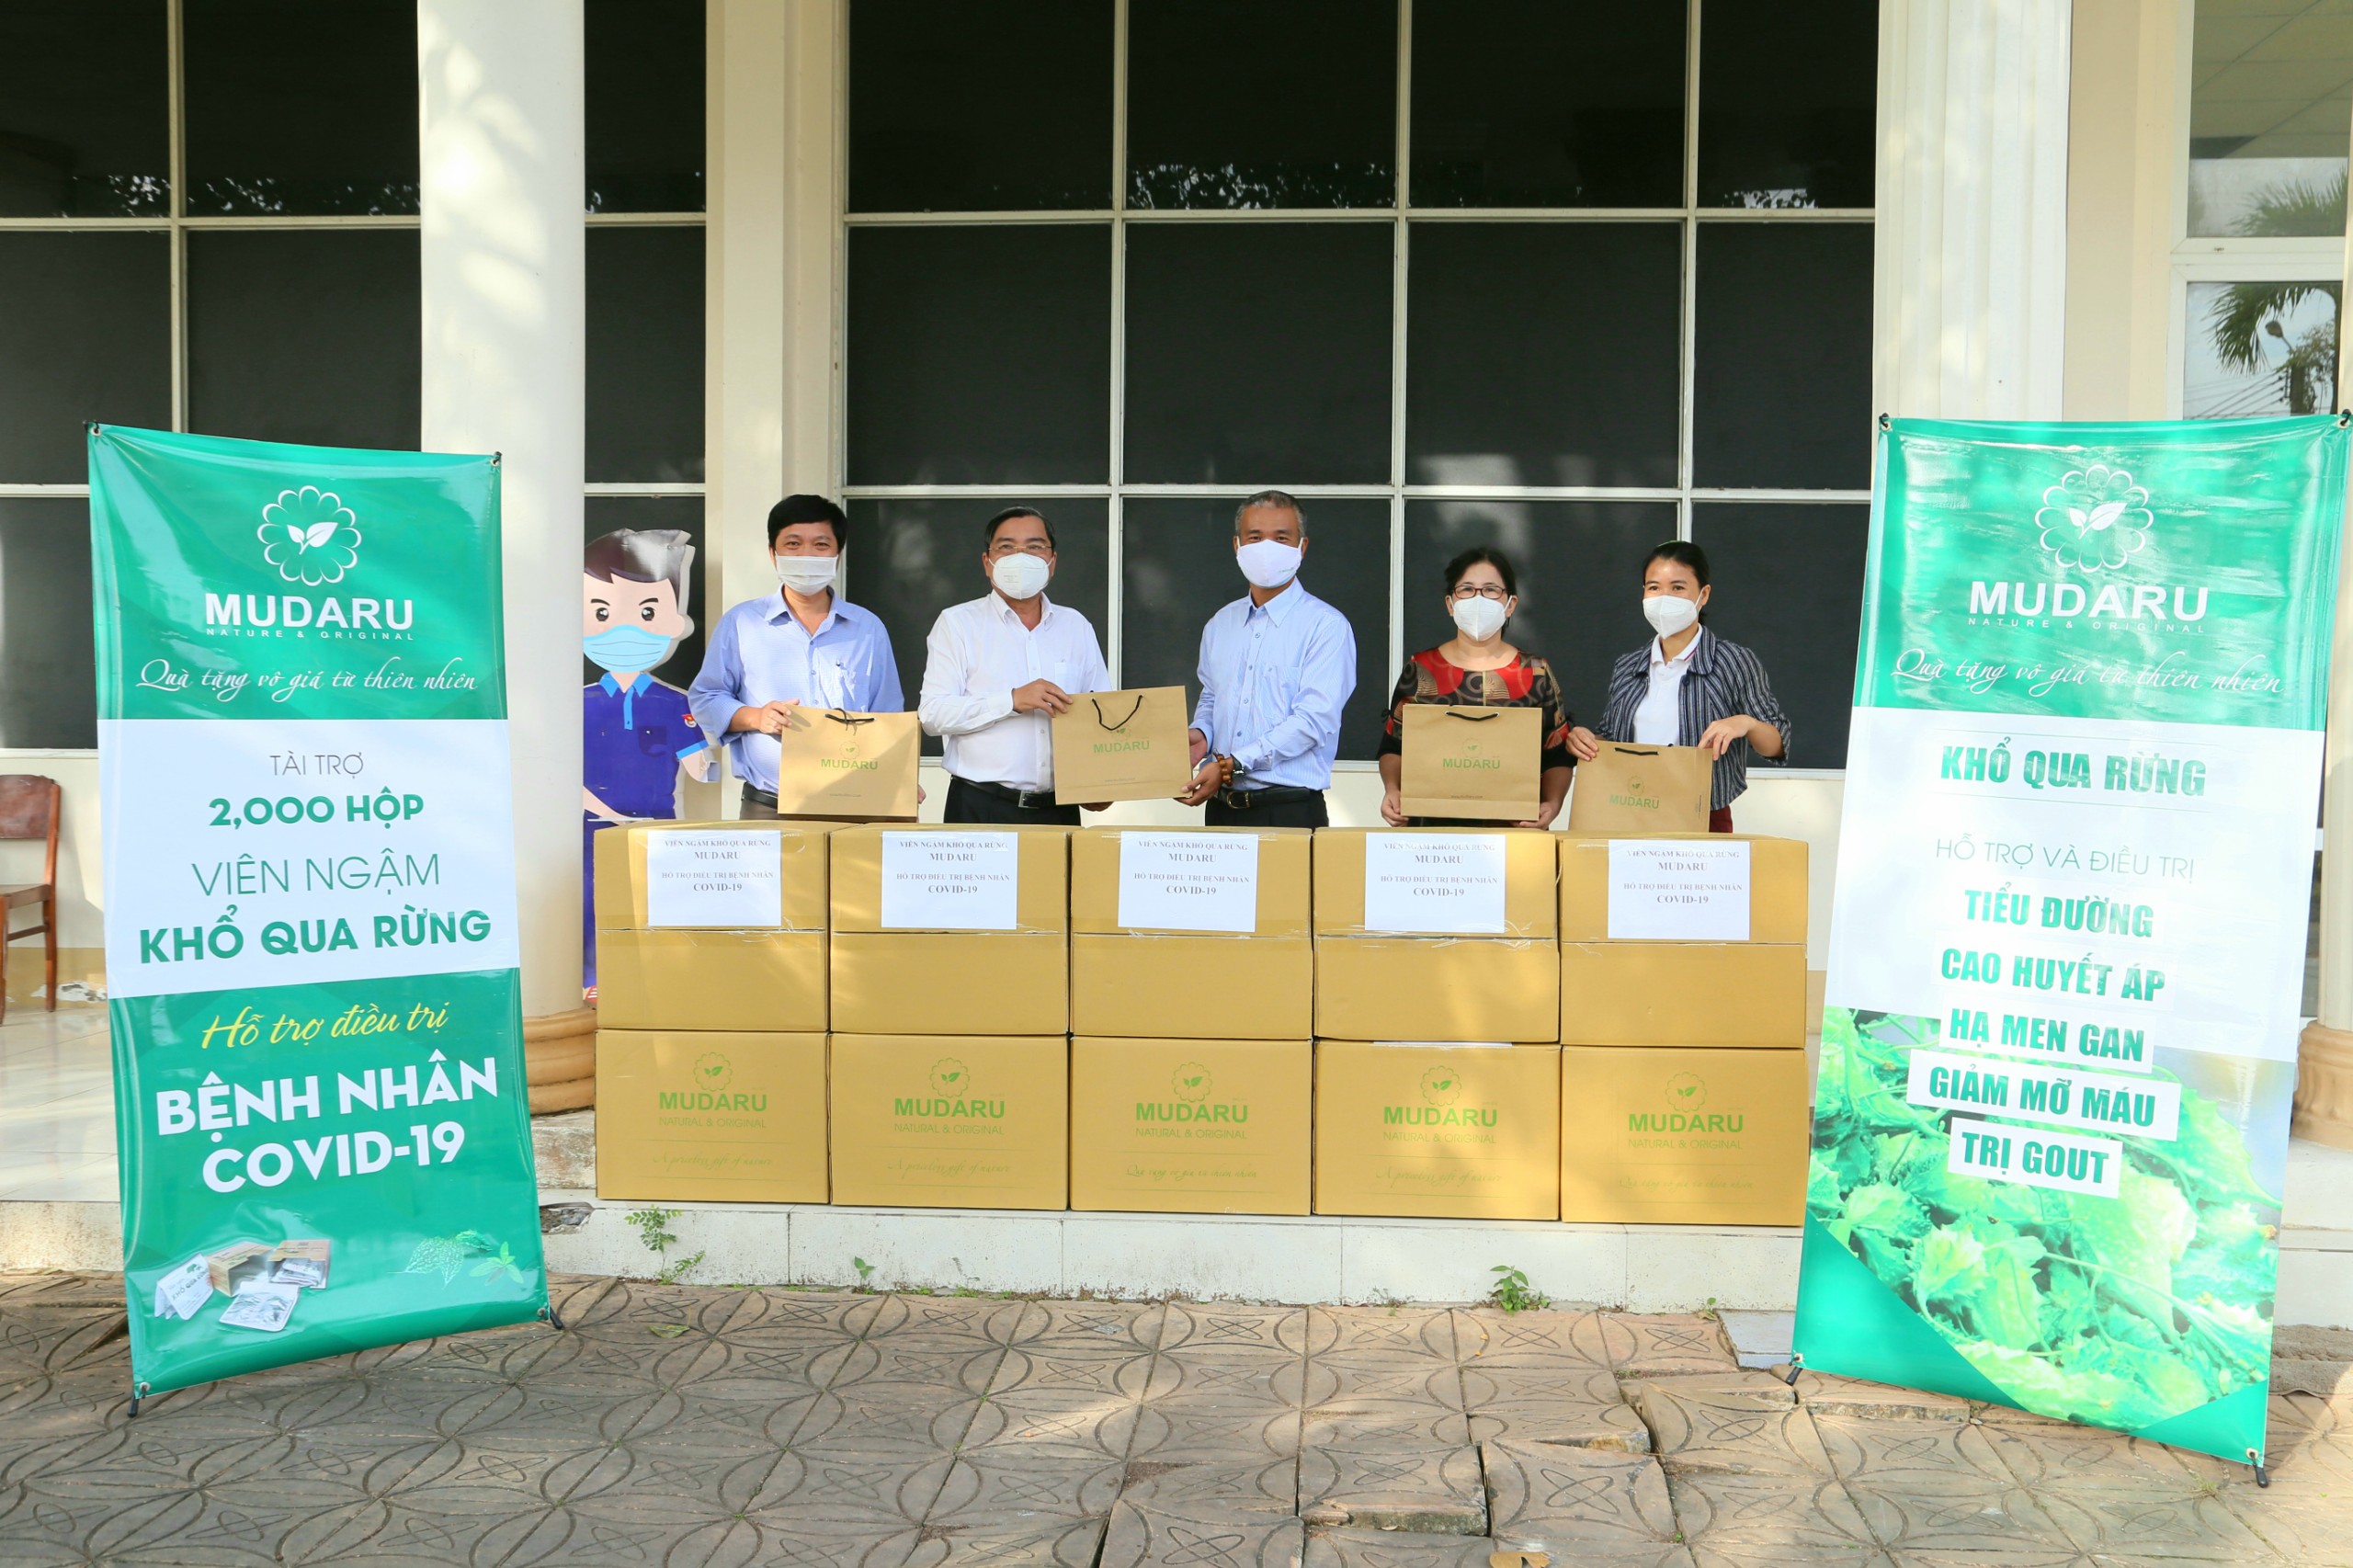 Mudaru trao tặng 2.000 hộp Viên ngậm khổ qua rừng để bổ sung vào túi thuốc điều trị cho bệnh nhân COVID-19